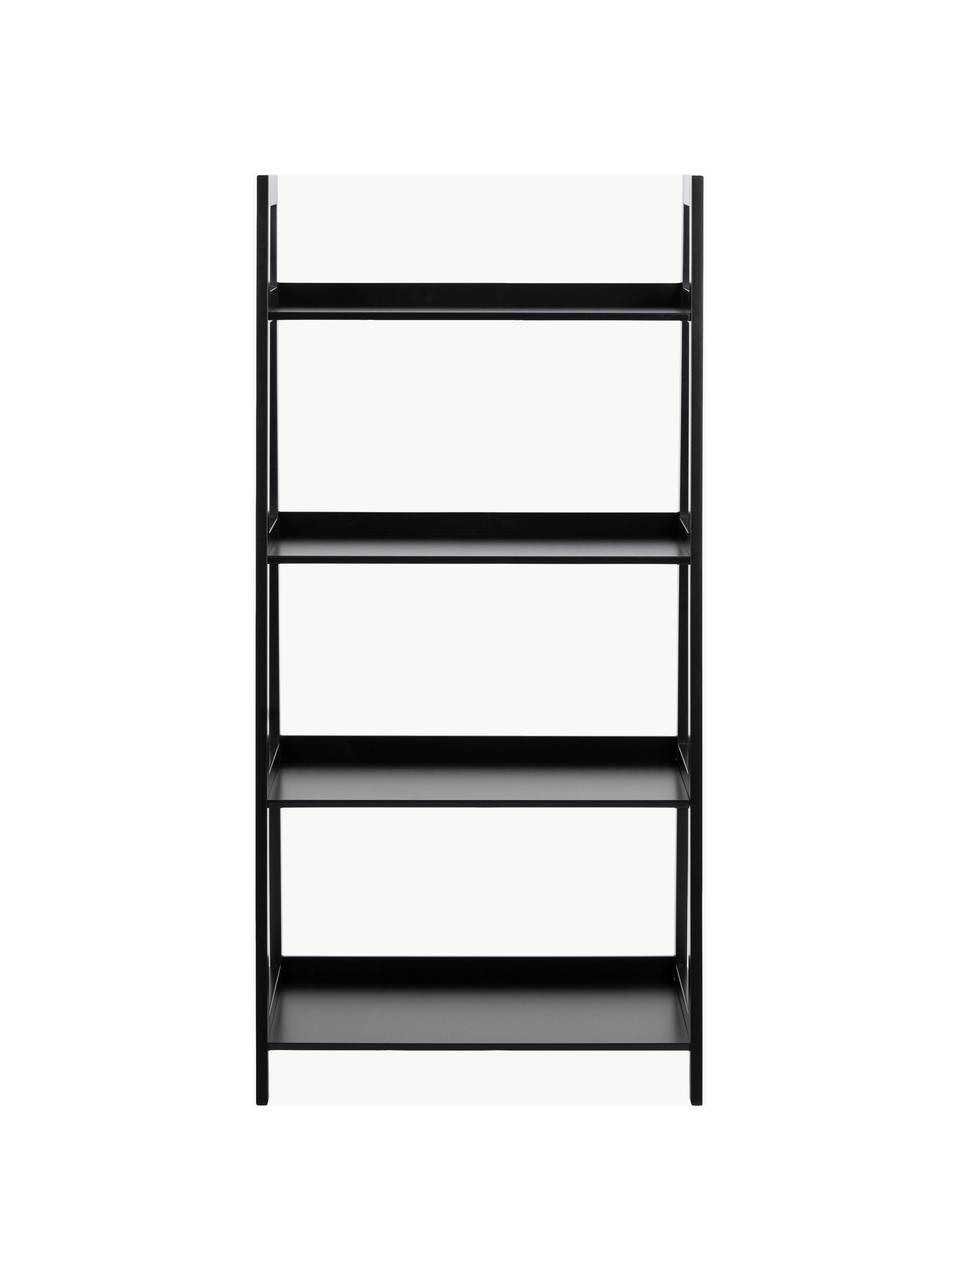 Nízký regál Wally, Lakovaná MDF deska (dřevovláknitá deska střední hustoty), Černá, Š 63 cm, V 130 cm